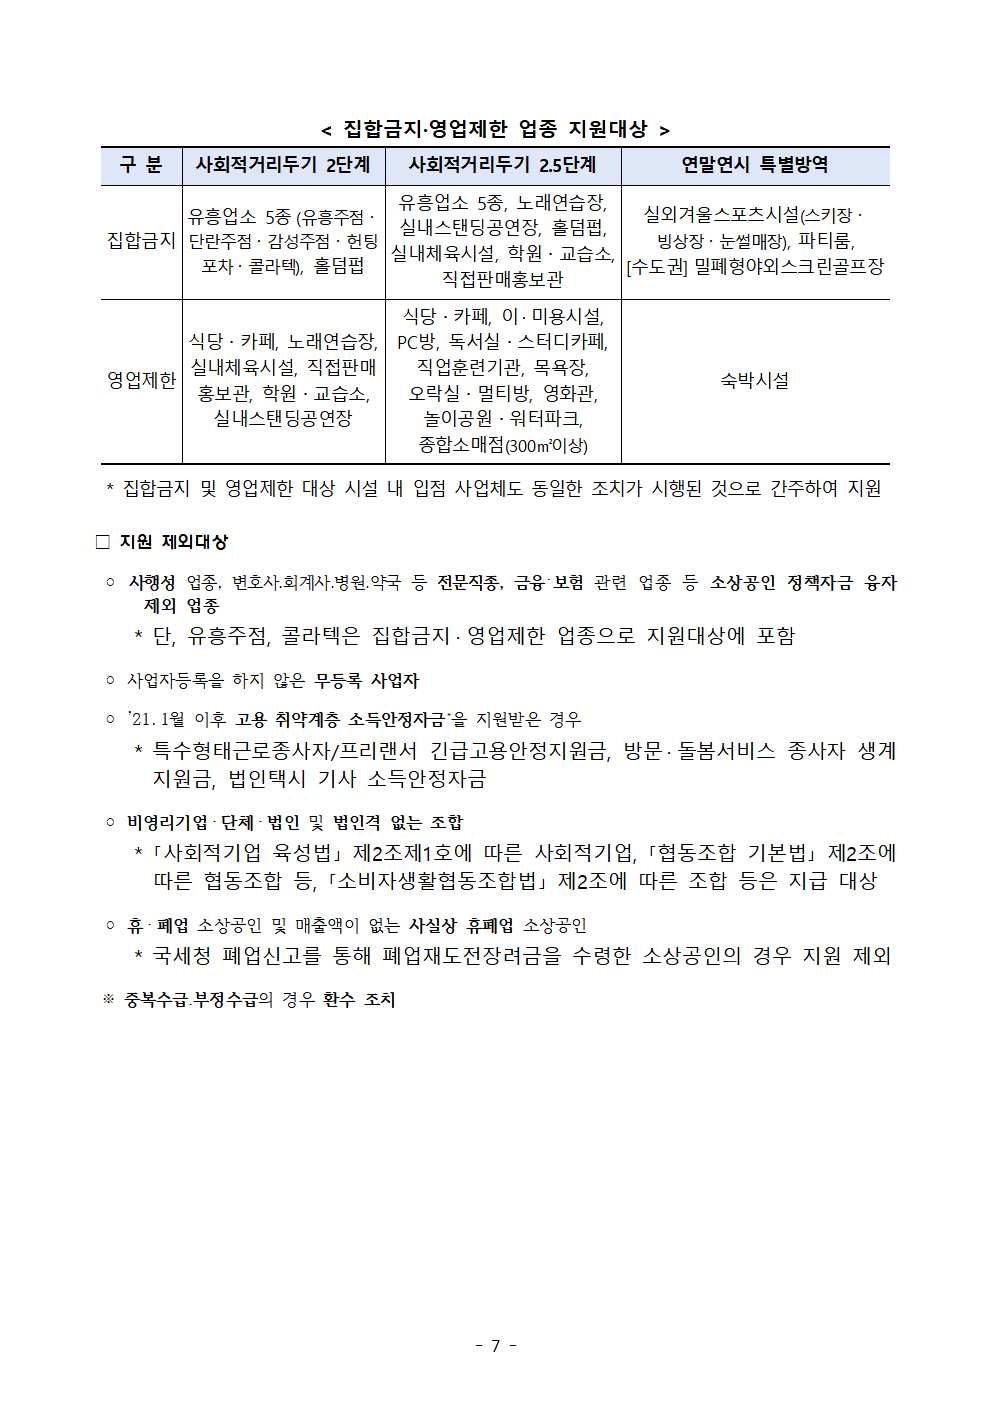 버팀목자금, 2월 1일 ~ 26일간 온라인 확인지급 진행